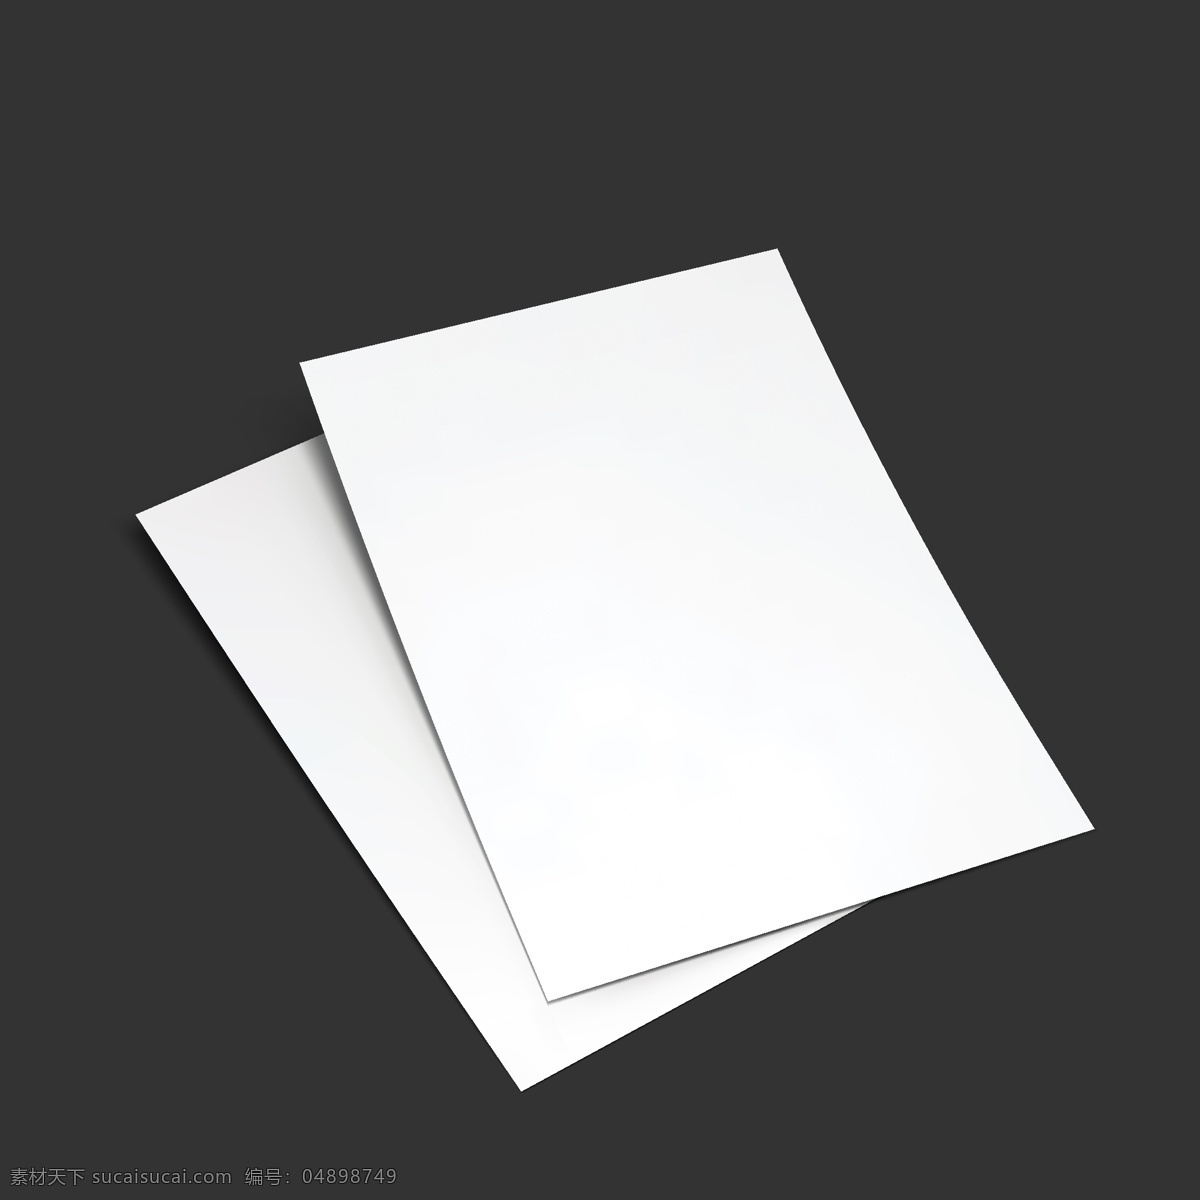 空白纸张 空白画册展示 空白折页 二折页 模板 空白 宣传页 打印纸 空白a4纸 传单 杂志 纸 纸张 效果 展示 样机 画册设计 名片卡片